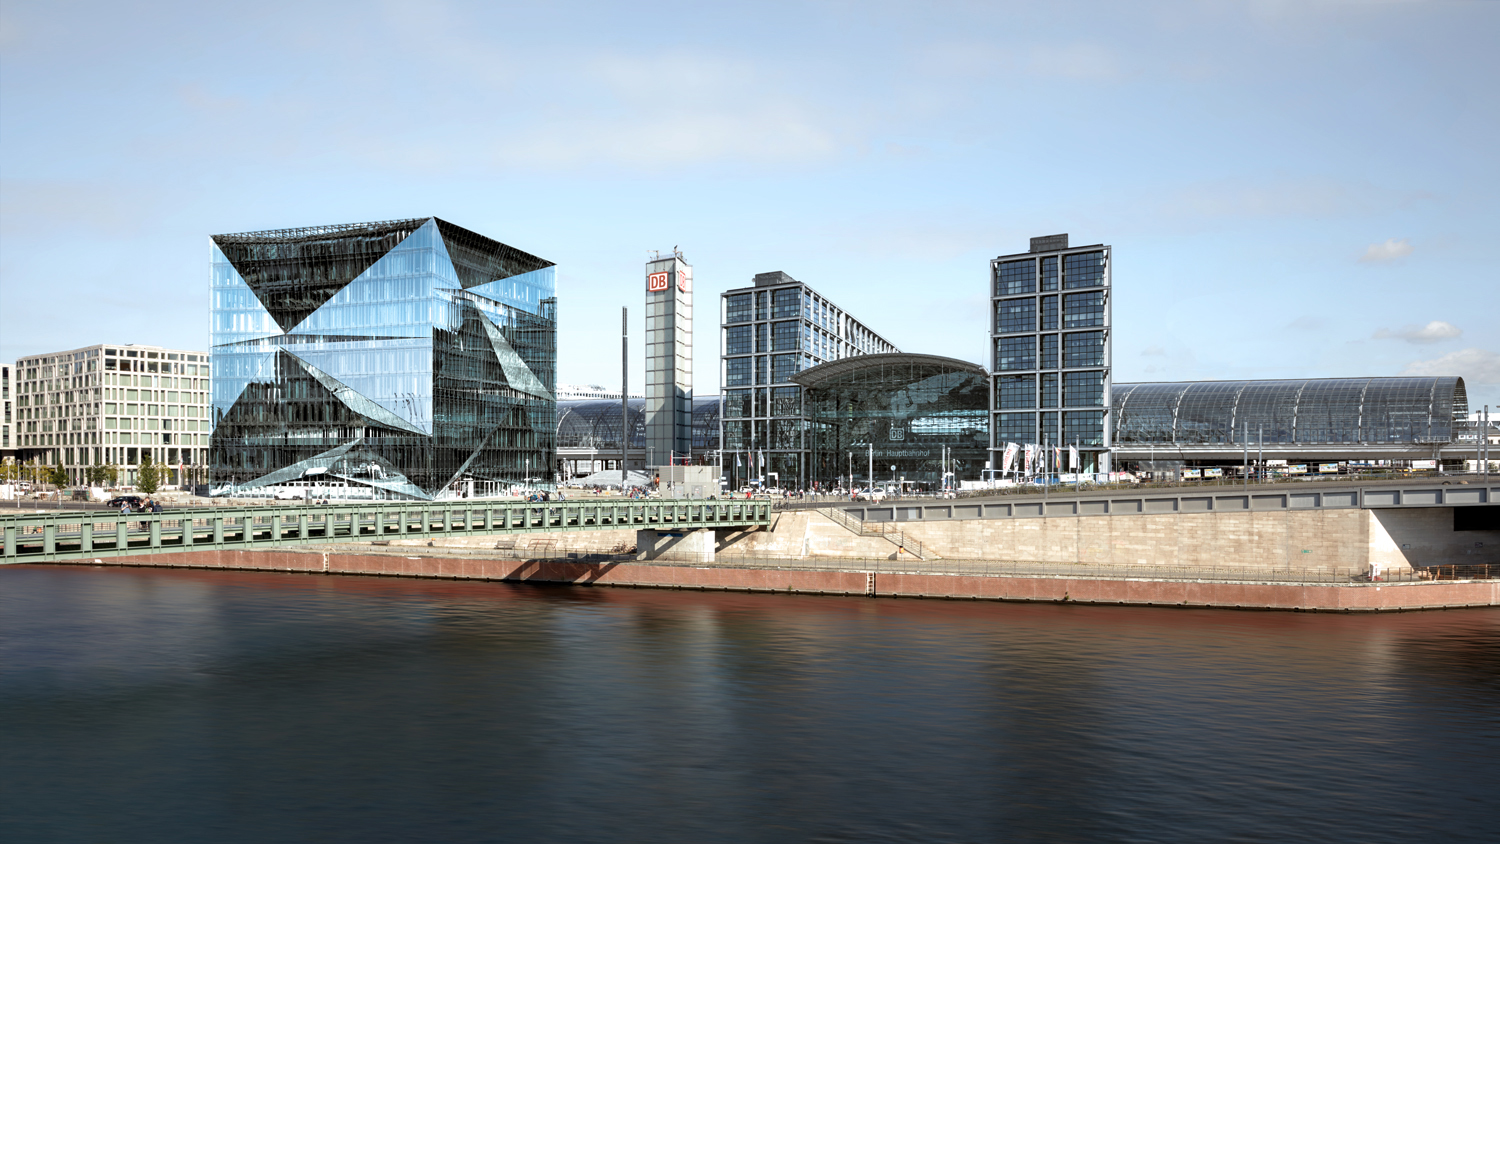 Aloys Kiefer Architekturfotografie: Querformat Aufnahme. Im Vordergrund ein Fluss. Links eine schmale Brücke, im Hintergrund links ein sehr großer Würfel mit gebrochener Glasfassade als Gebäude.